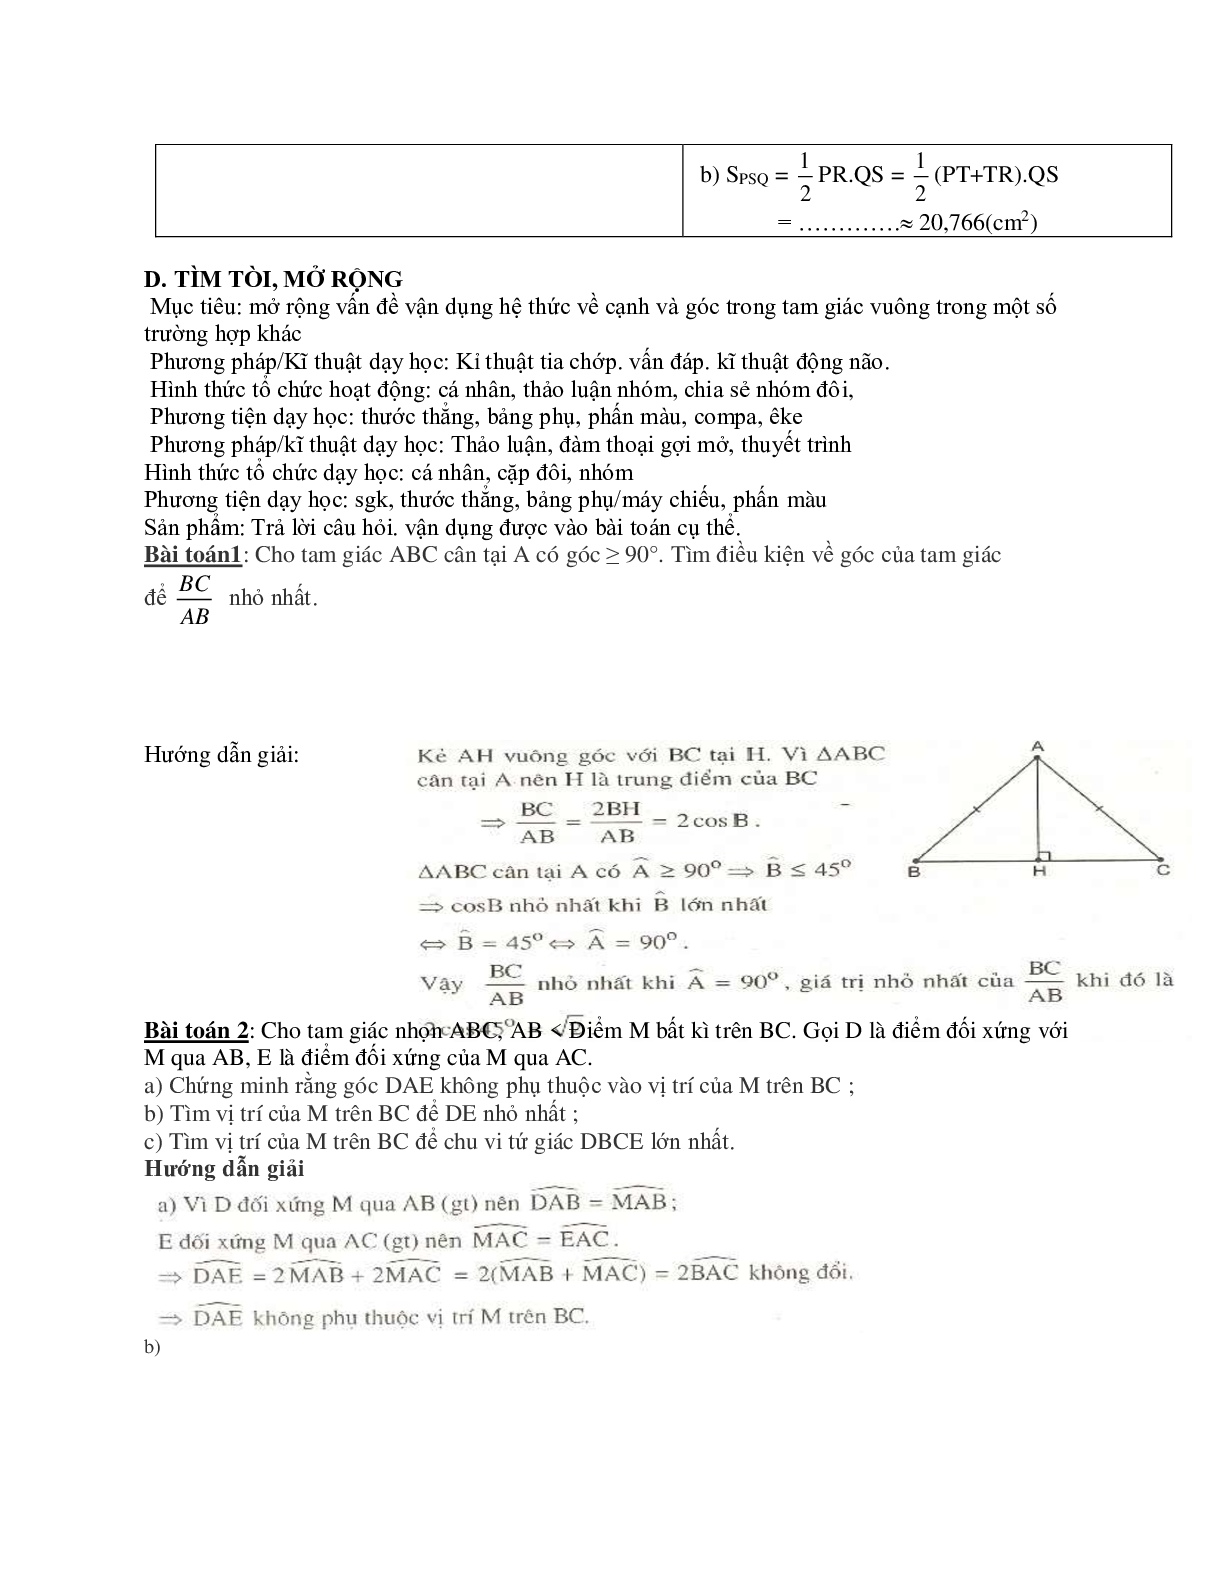 Giáo án Hình học 9 chương 1 bài 4: Một số hệ thức về cạnh và góc trong tam giác vuông mới nhất (trang 8)